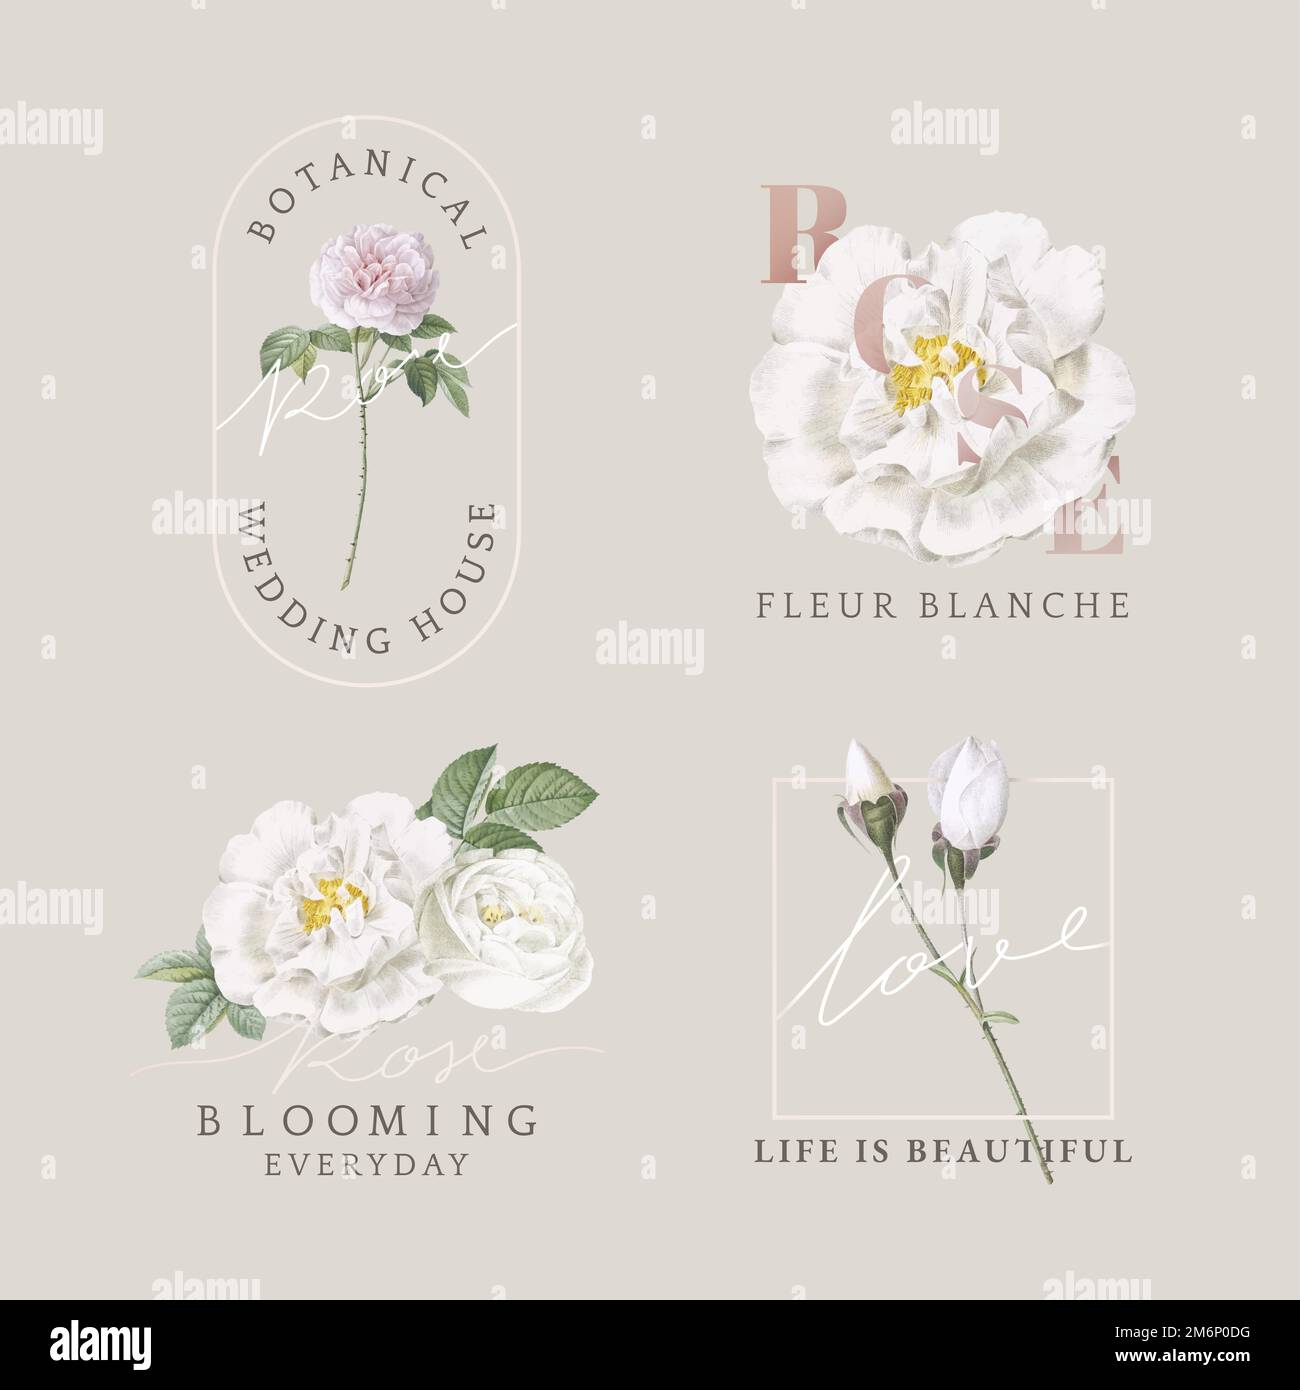 Florist branding logo collection vector Stock Vector